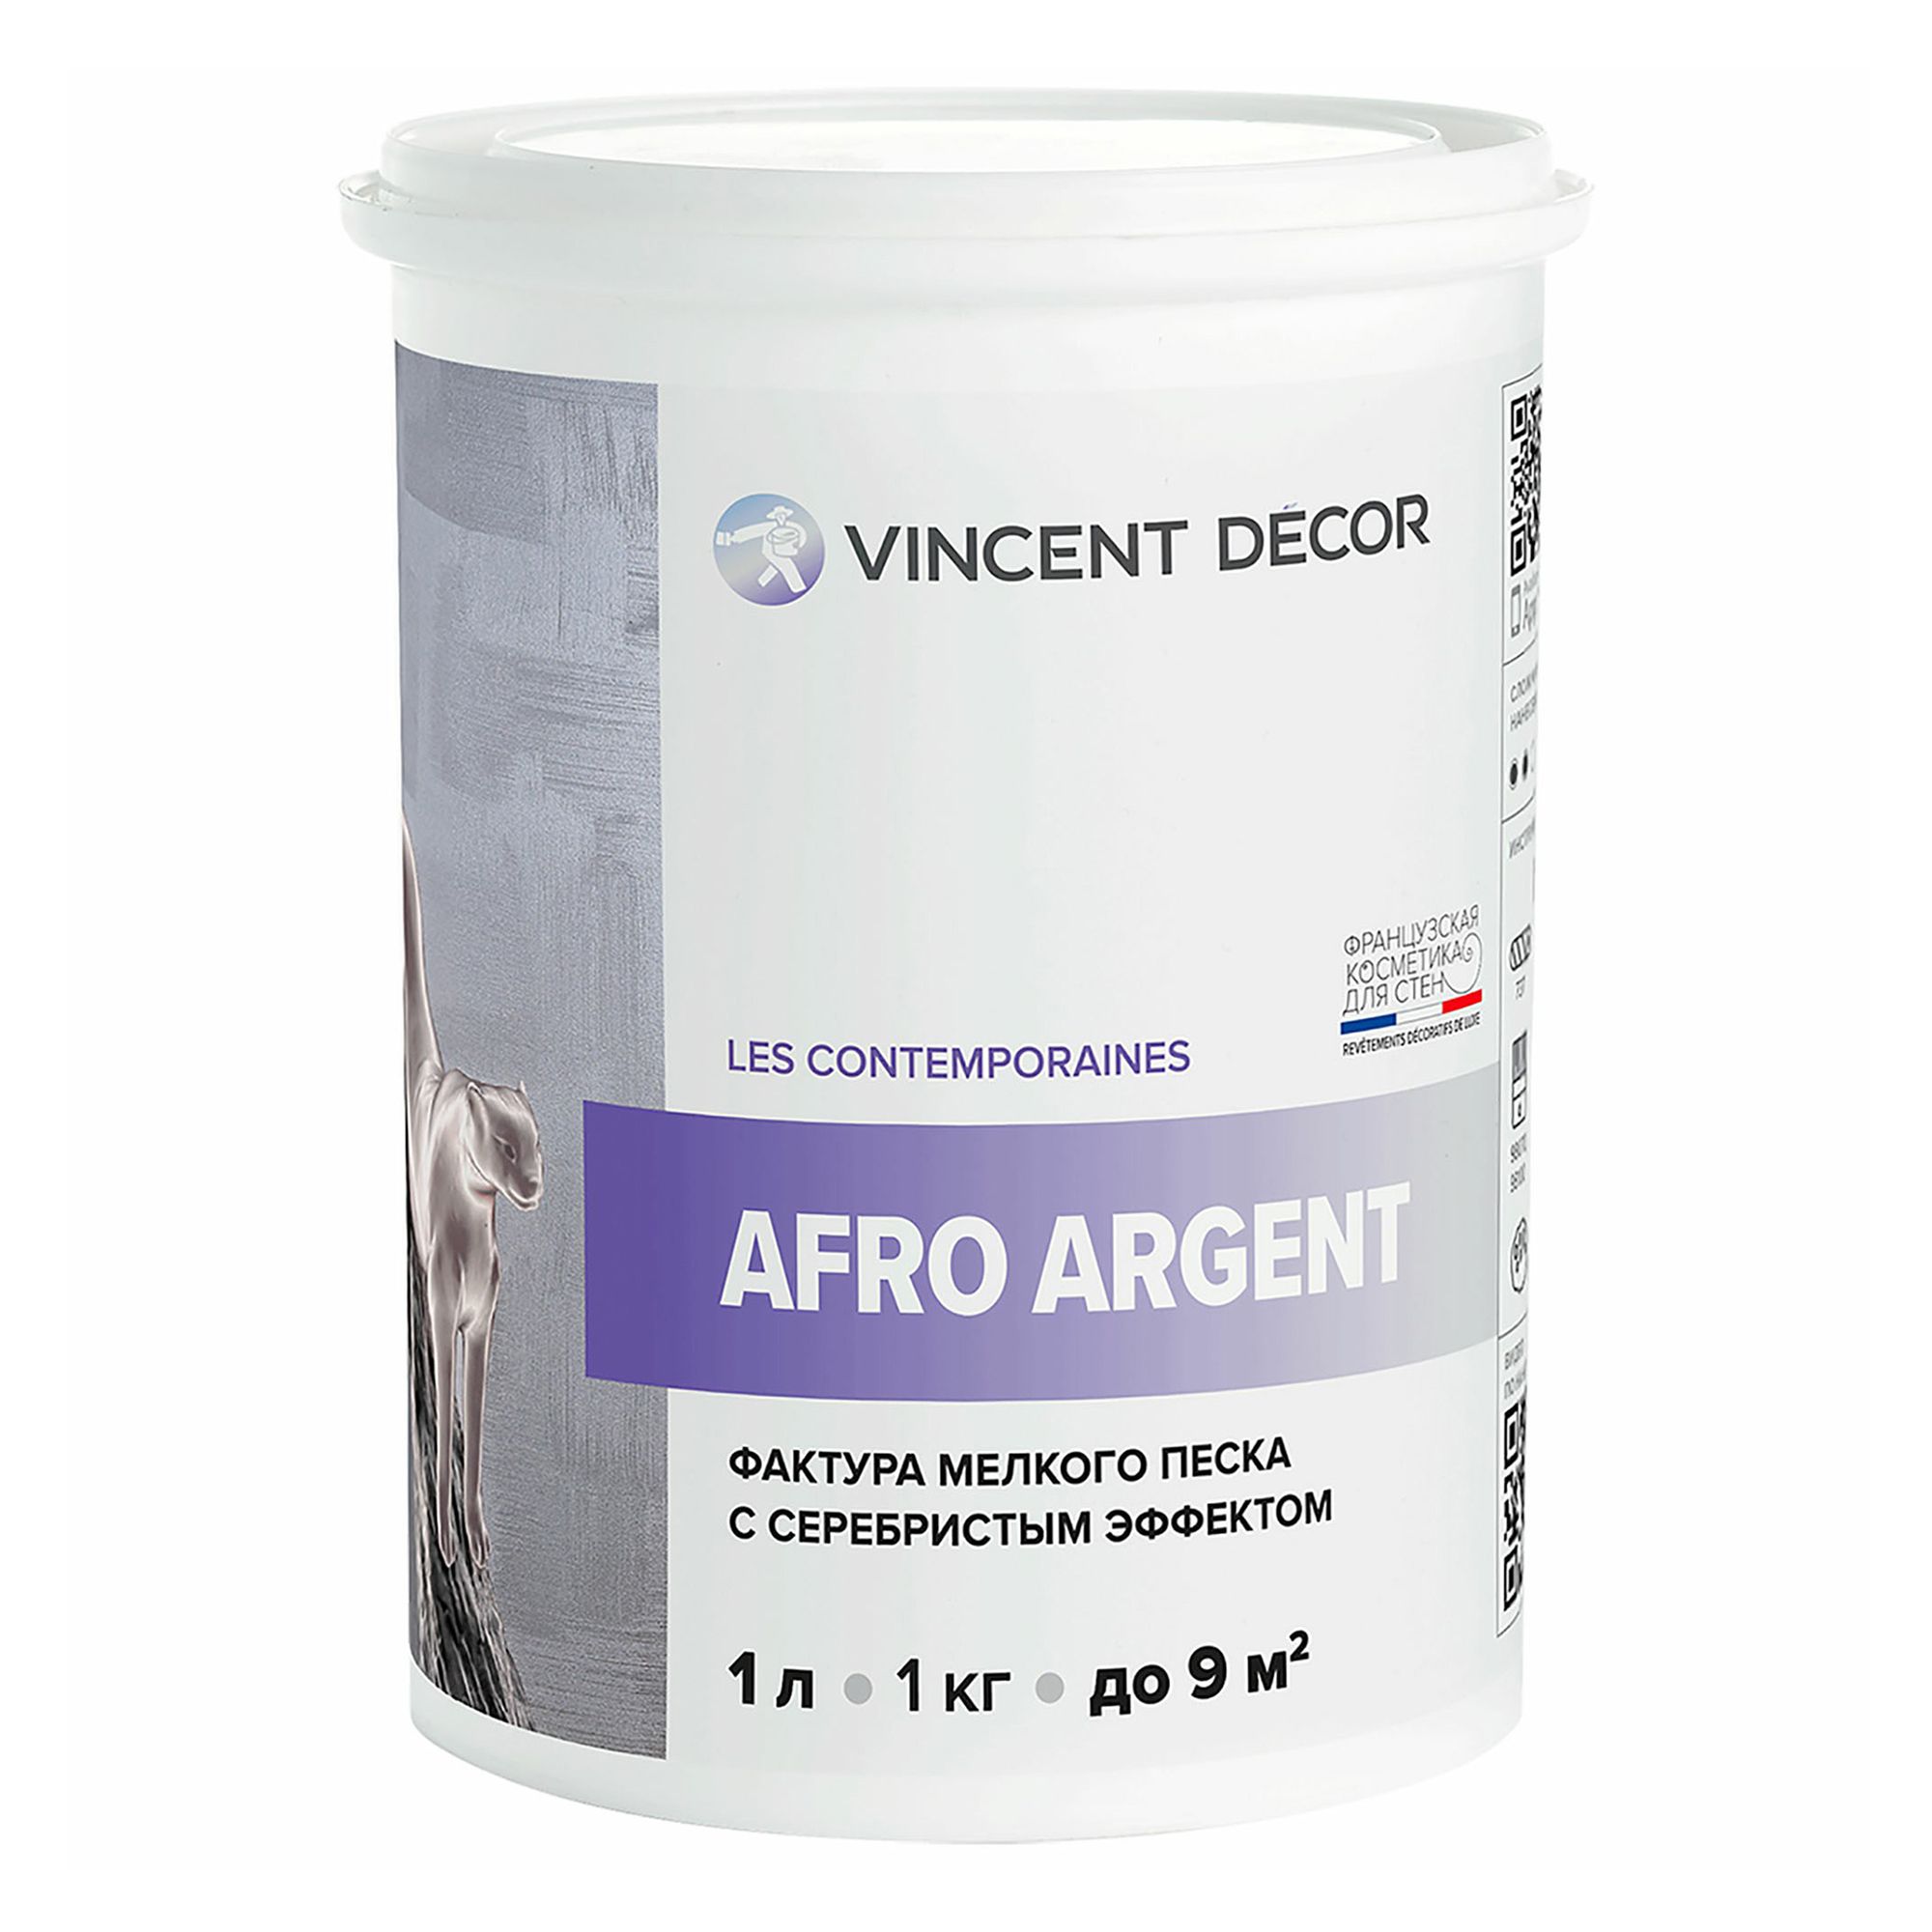 Декоративное покрытие Vincent Decor серебристый Afro Argent с фактурой мелкого песка  1 л